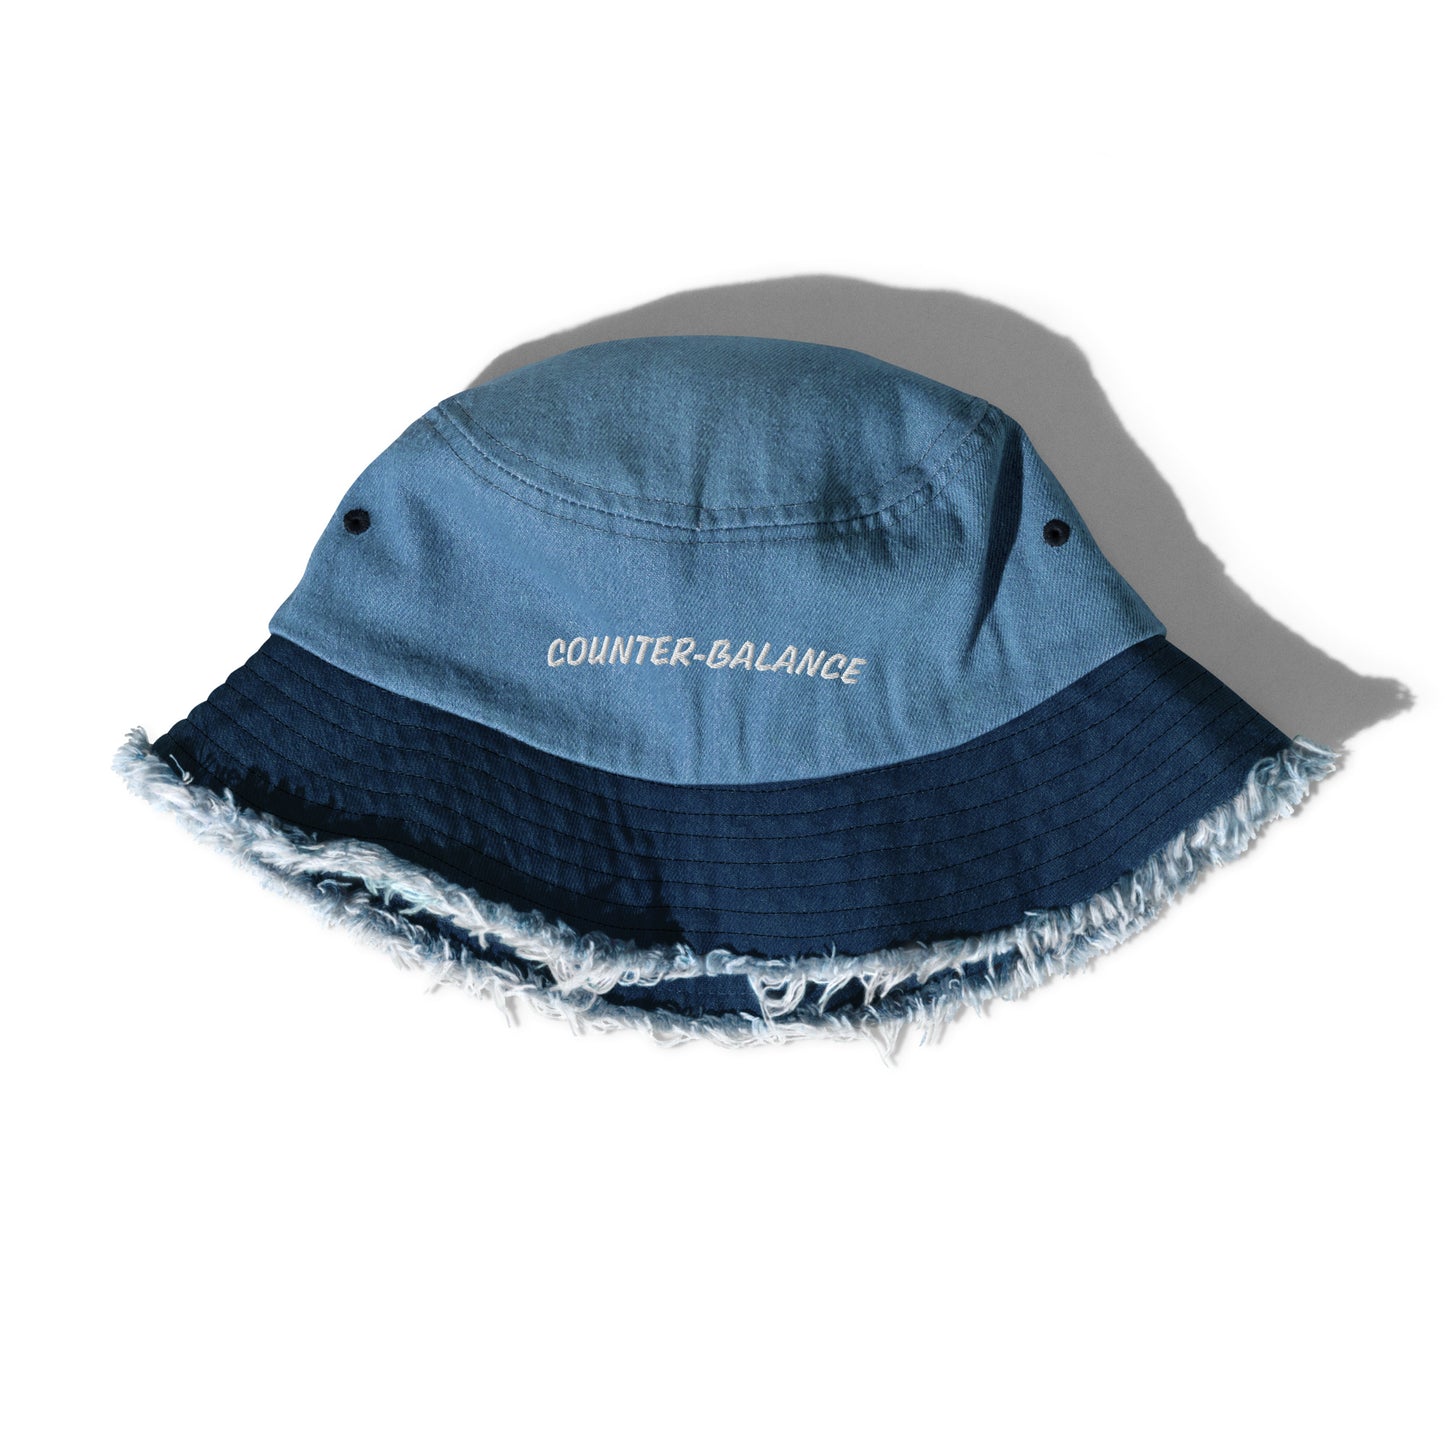 Y006 - Topi baldi denim bermasalah (biru/navy)